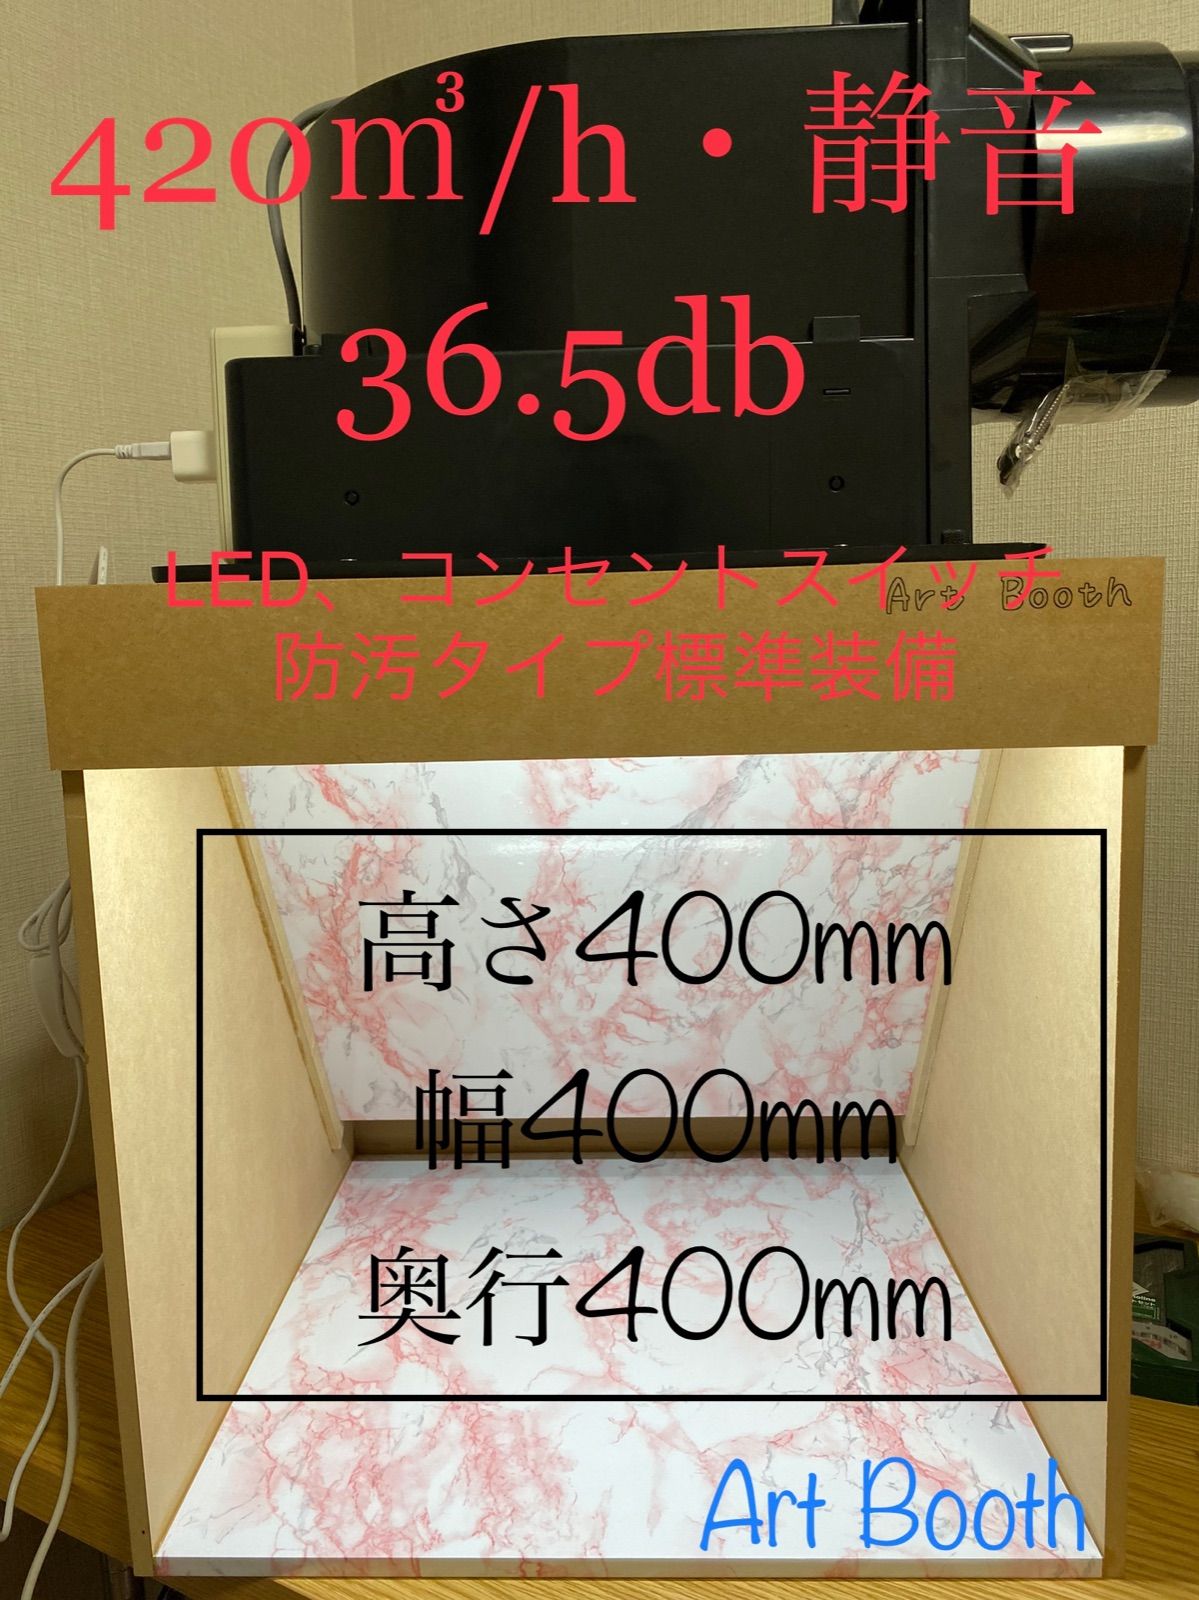 塗装ブース 420/h 36.5db 大風量 静音 LED 防汚タイプ - Artaku - メルカリ